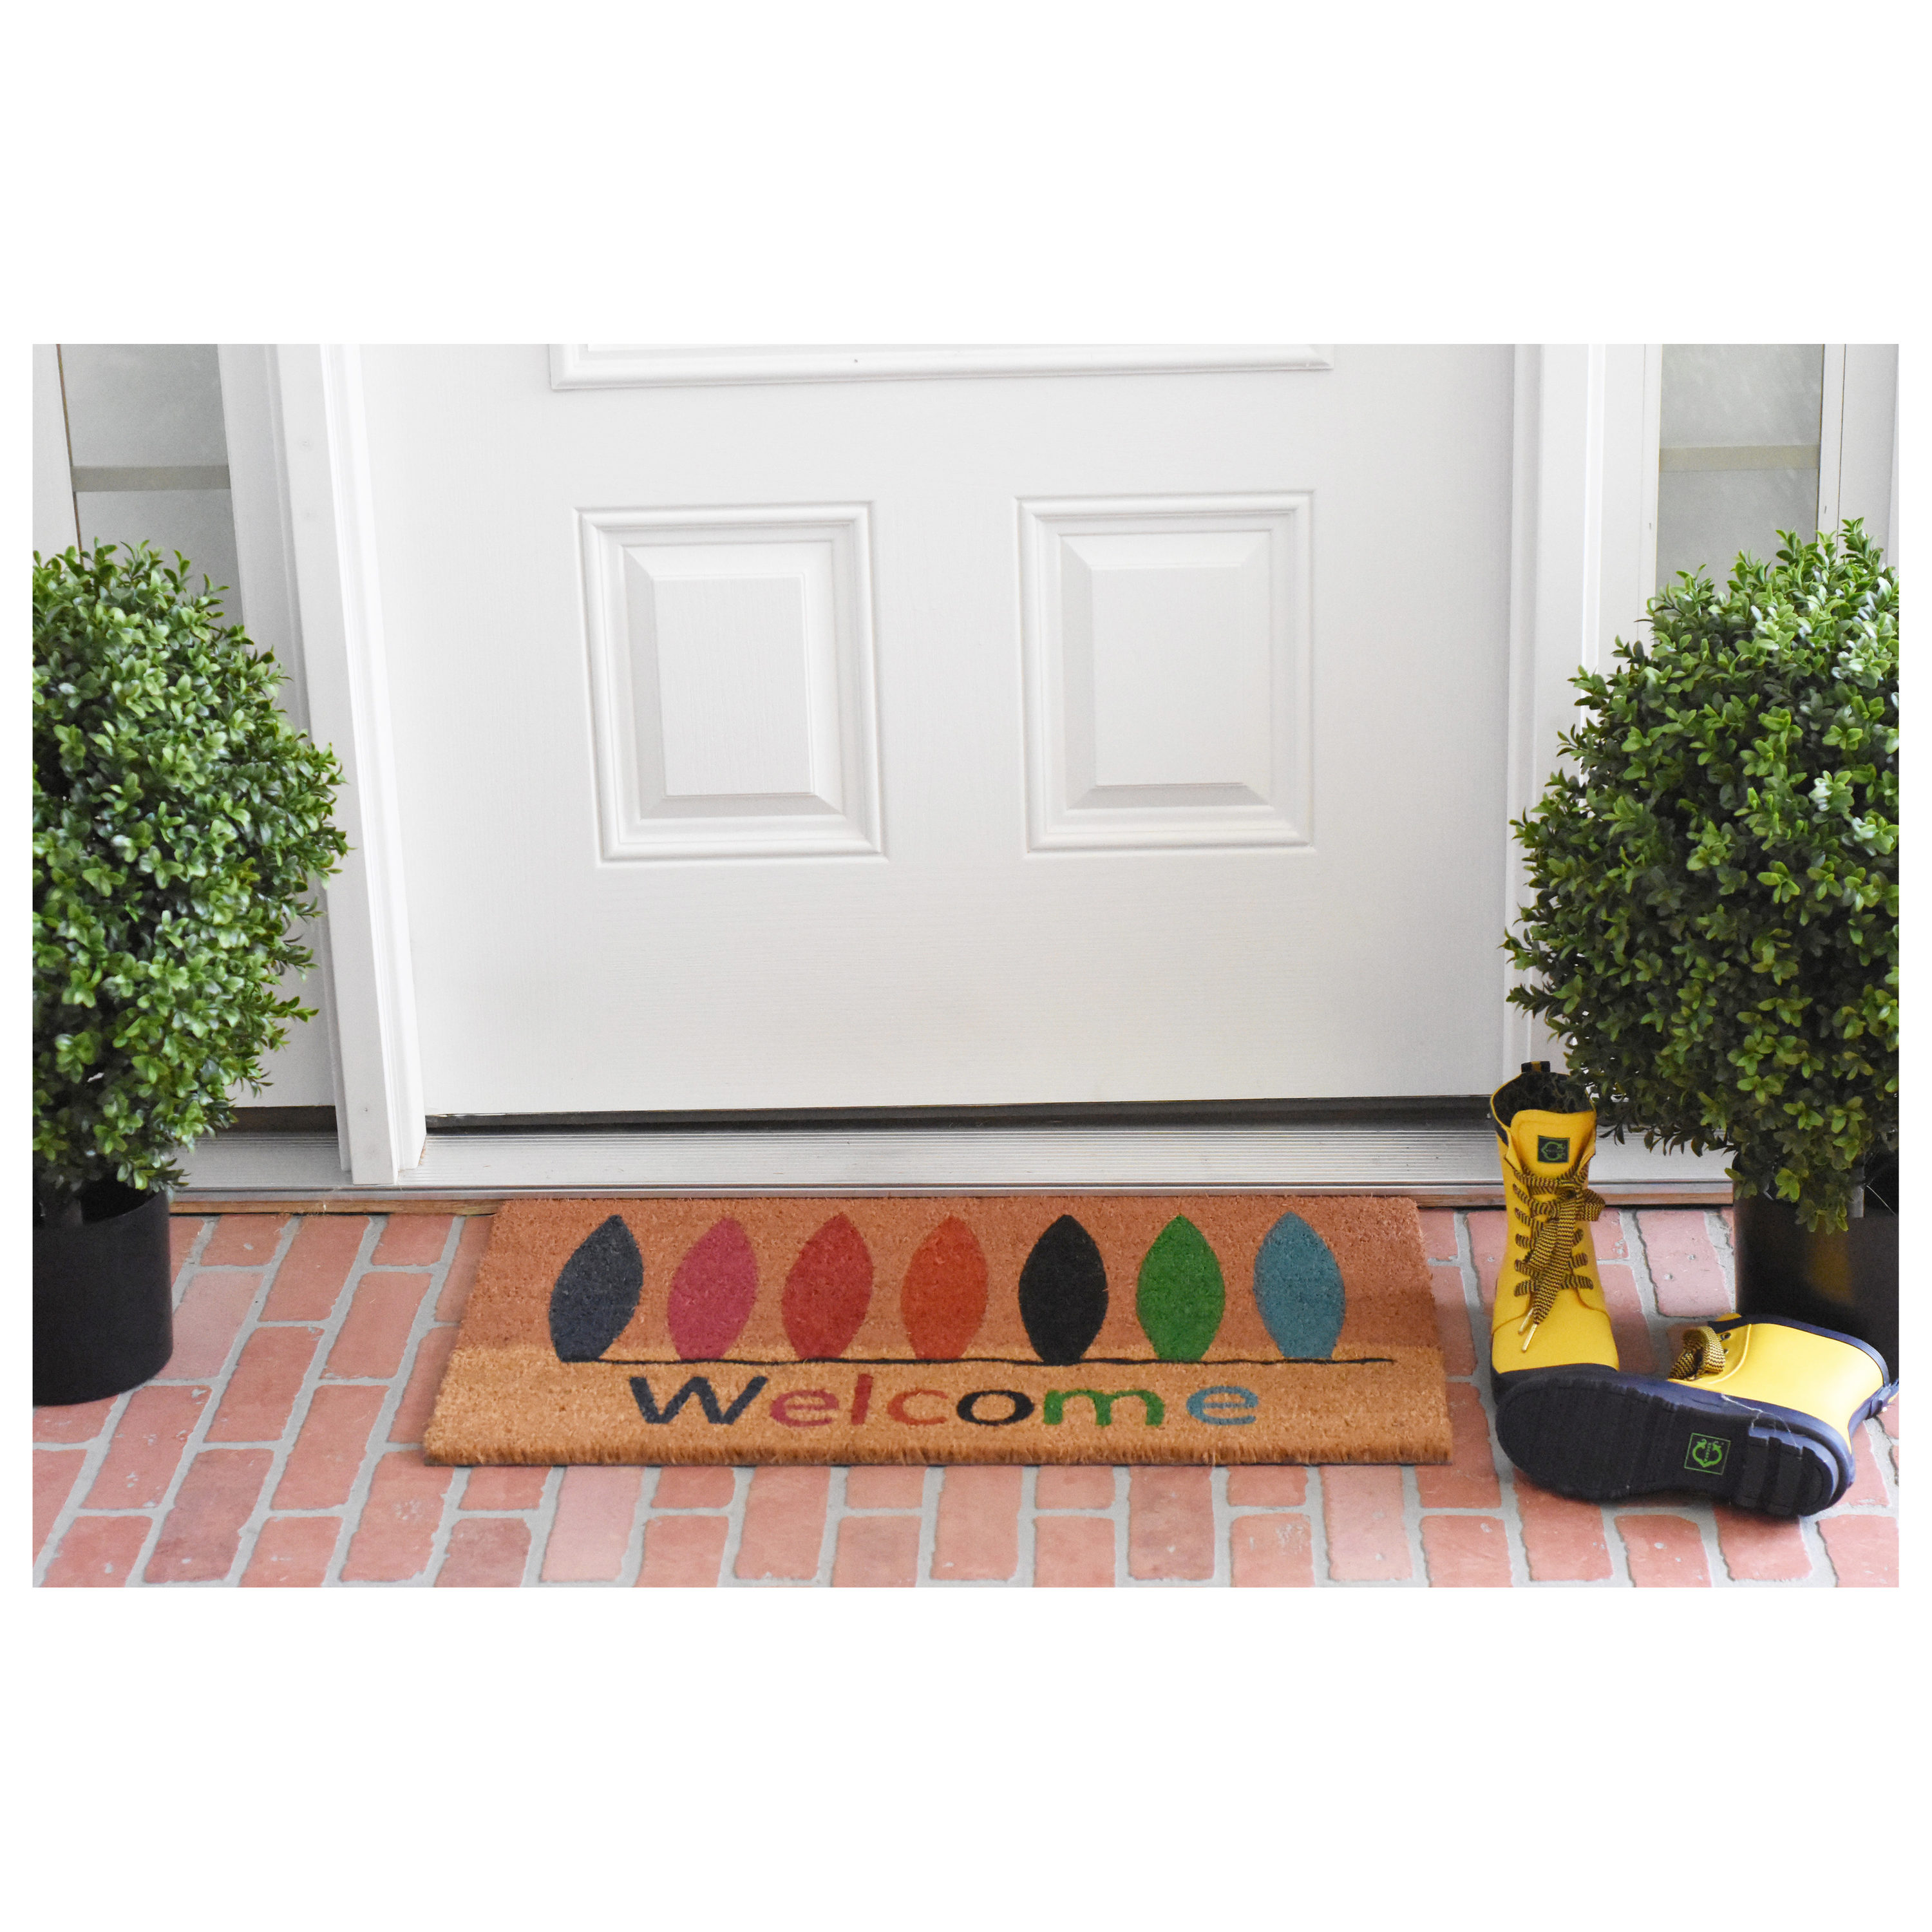 Calloway Mills 121771729 Surfboard Welcome Doormat